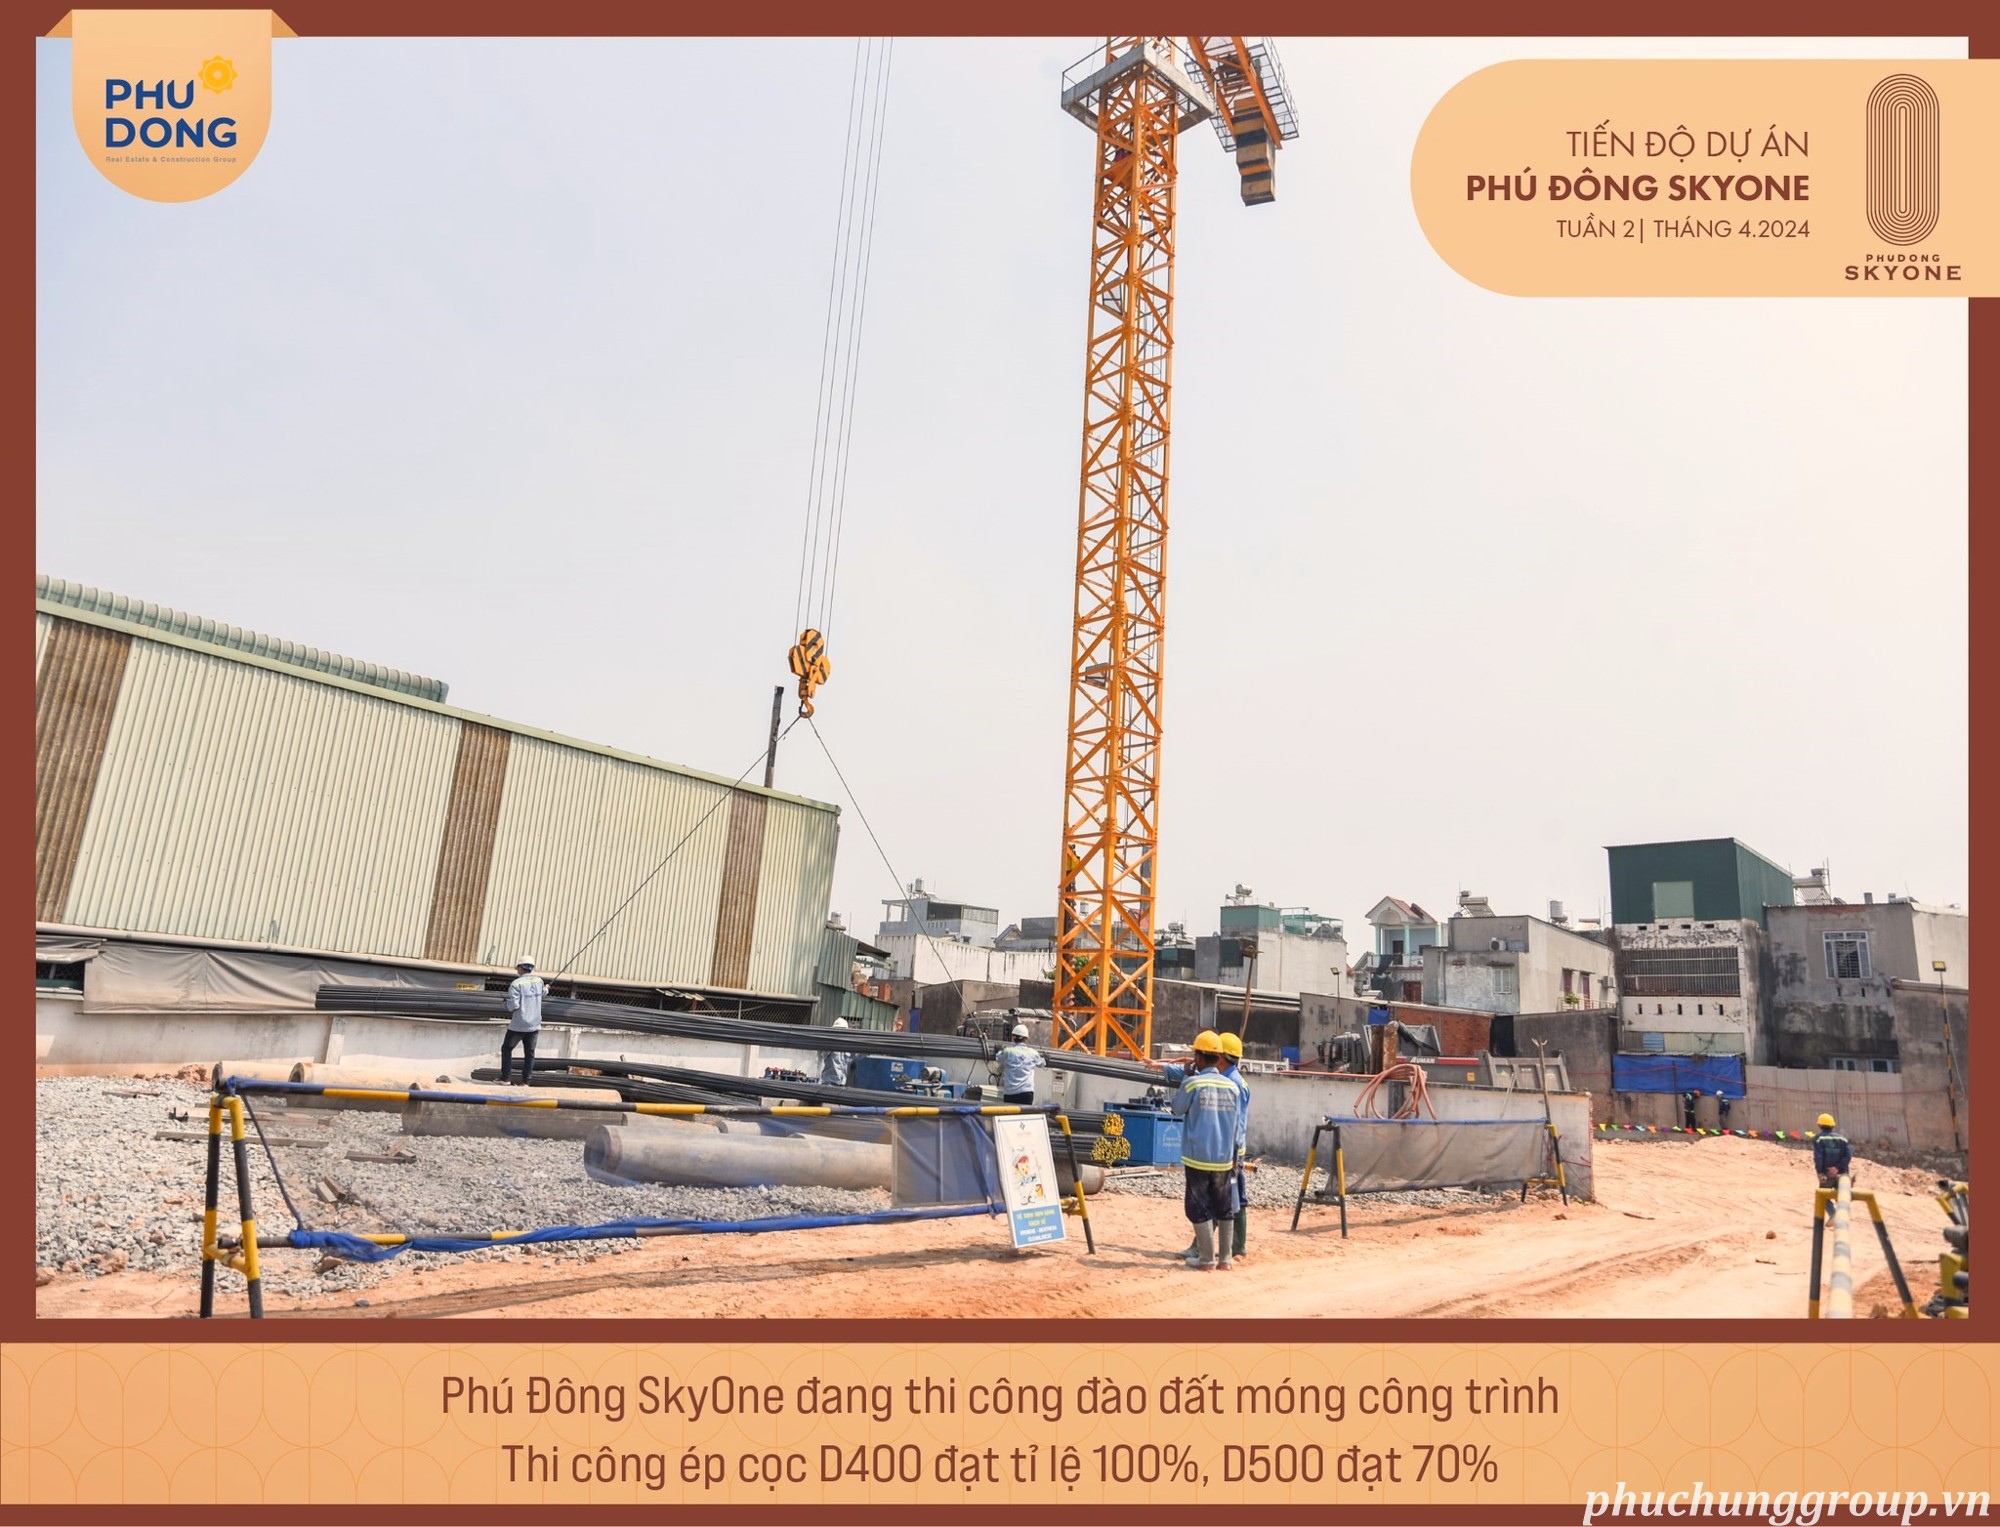 Tiến độ xây dựng dự án Phú Đông Sky One giữa tháng 4.2024